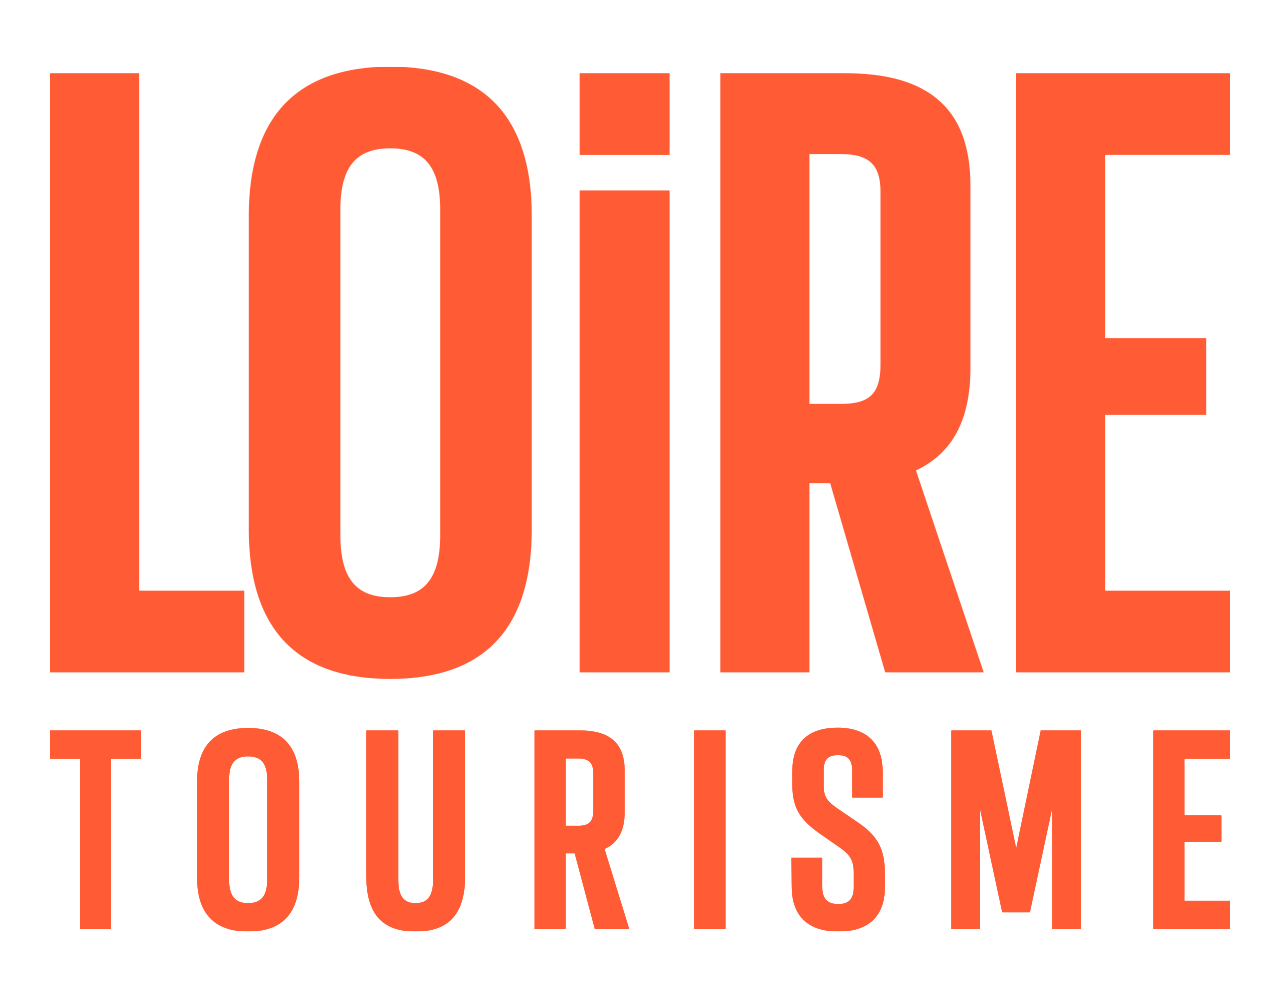 Loire Tourisme